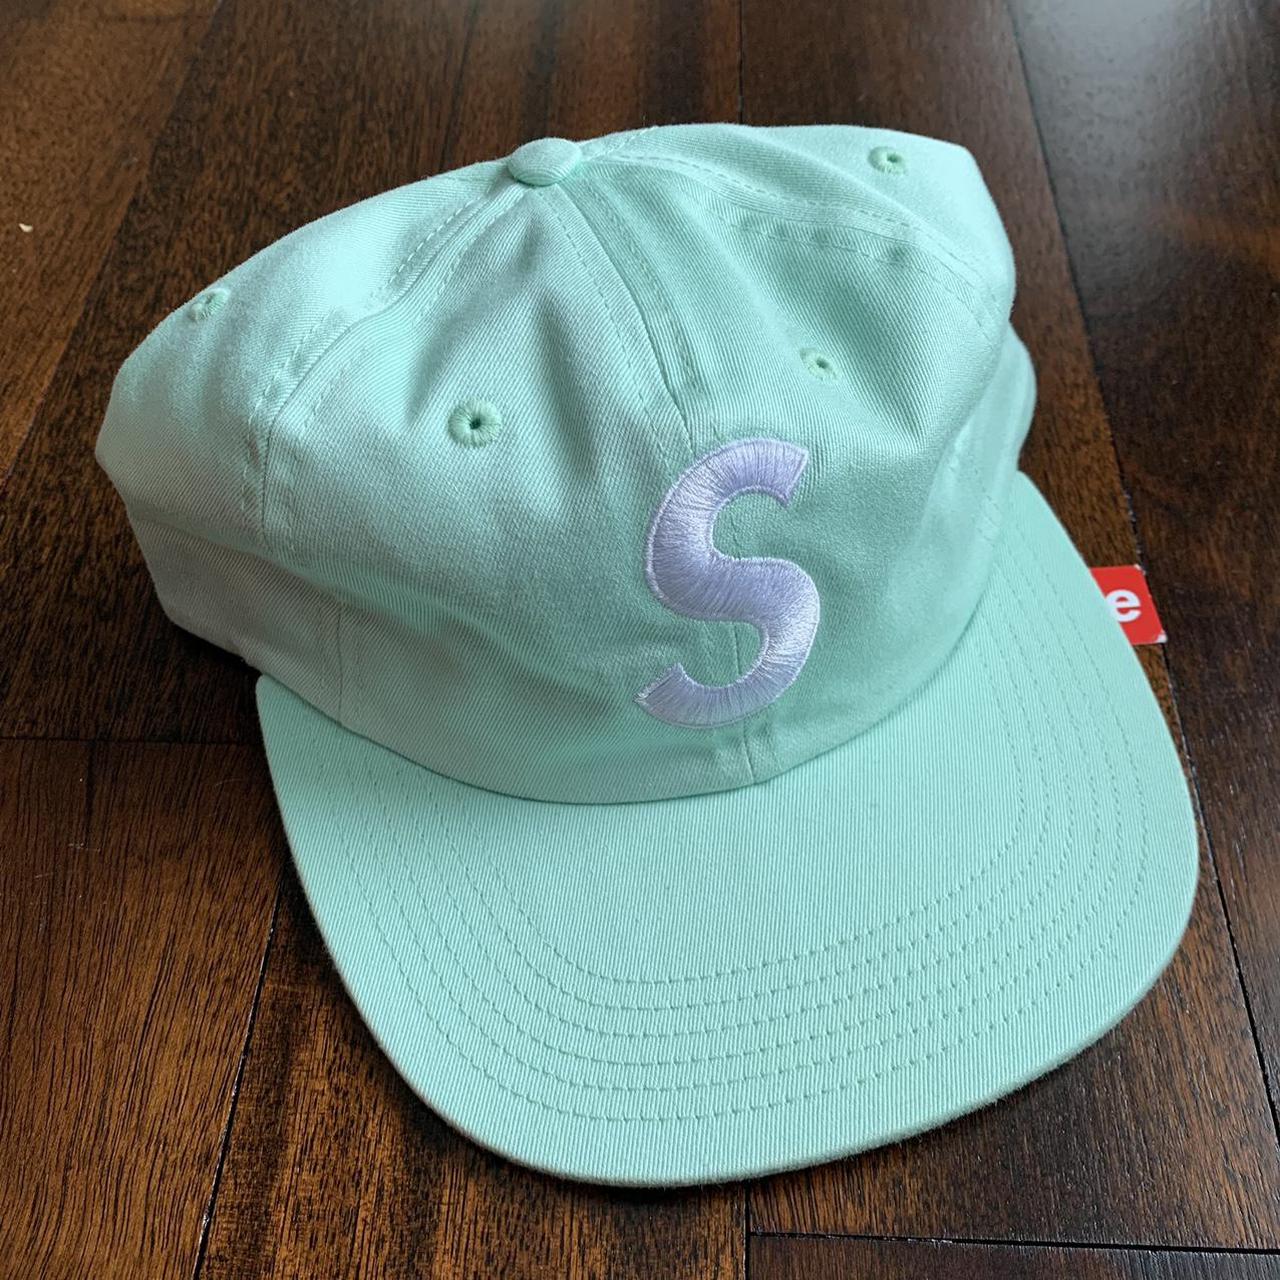 S/S15 DSWT Supreme S logo 6 panel Strapback Hat Mint... - Depop